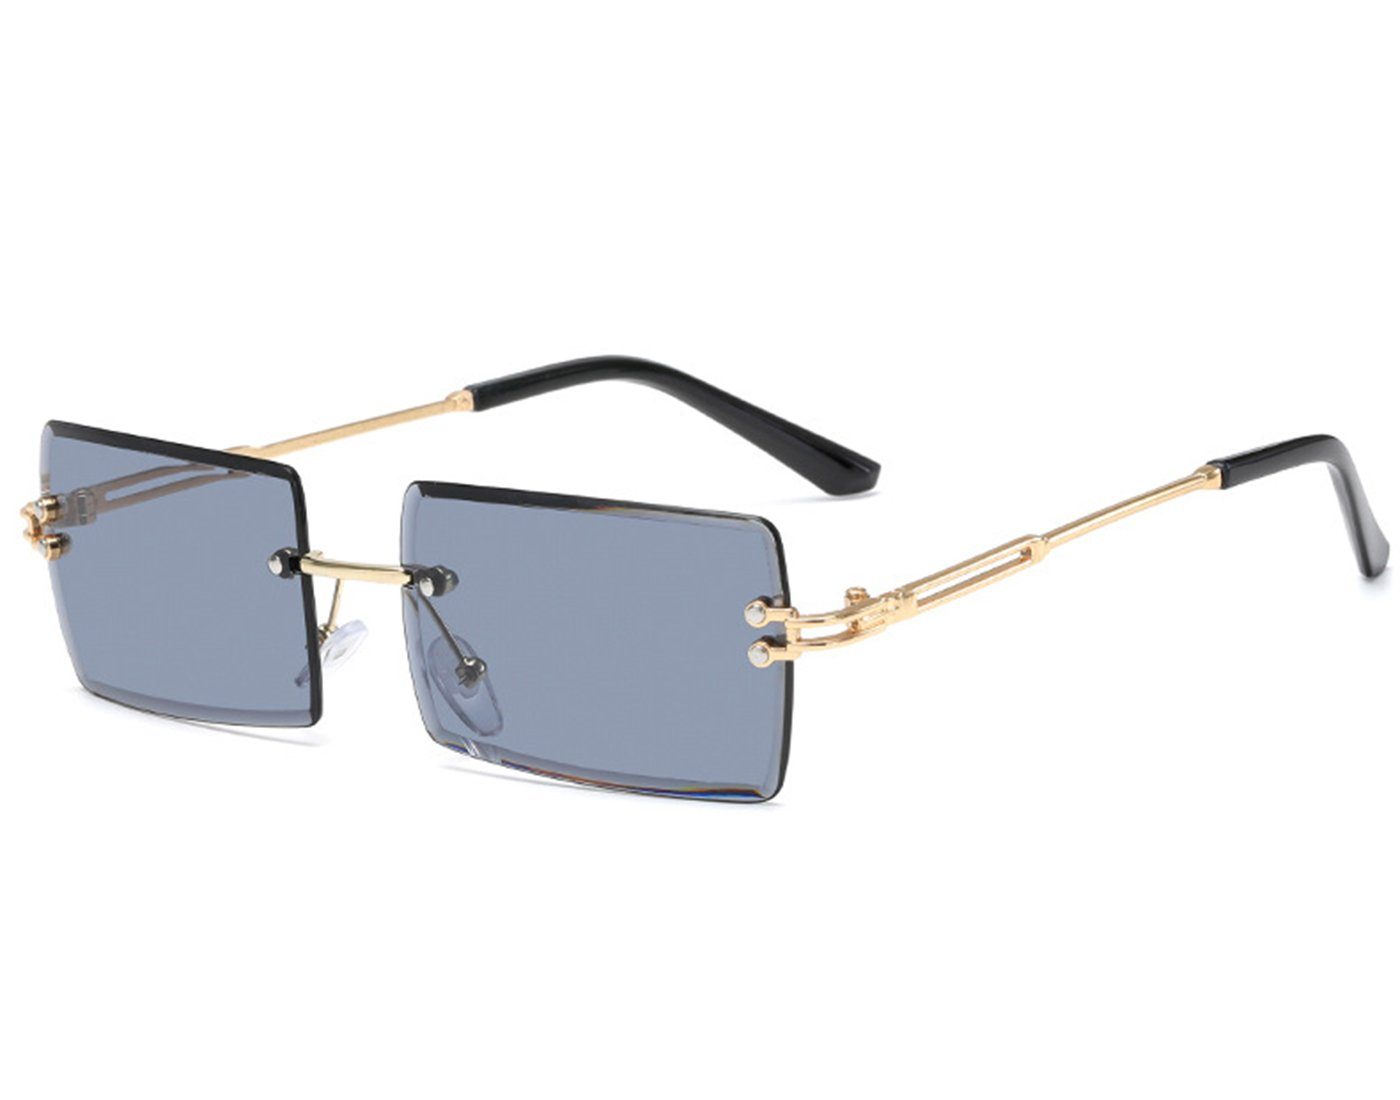 Haiaveng Sonnenbrille Rechteckige Randlose Sonnenbrille Unisex Ultra-Small Retro Brille Durchsichtige Linse für Damen Herren grey